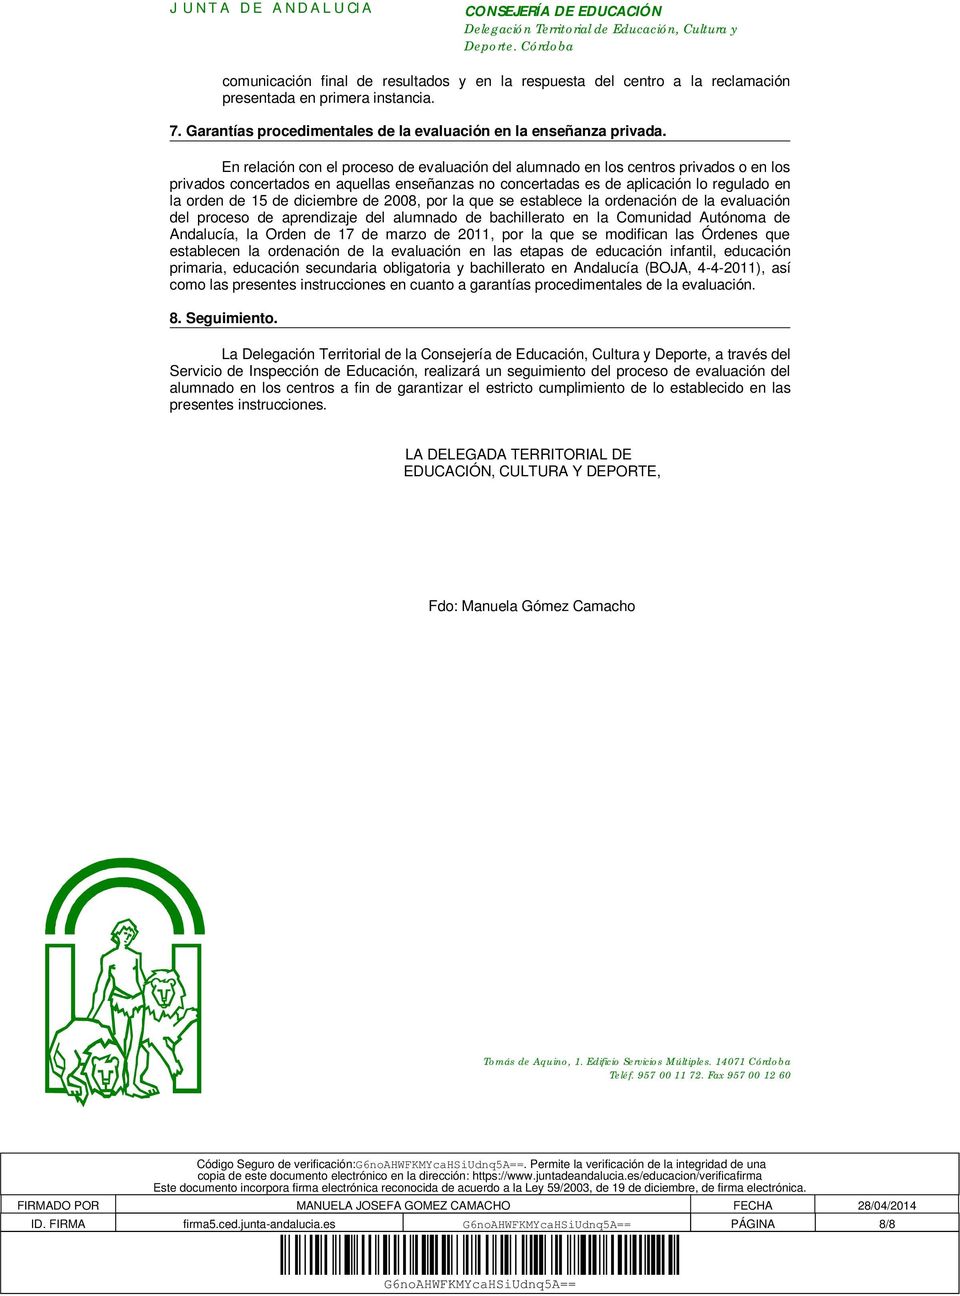 diciembre de 2008, por la que se establece la ordenación de la evaluación del proceso de aprendizaje del alumnado de bachillerato en la Comunidad Autónoma de Andalucía, la Orden de 17 de marzo de